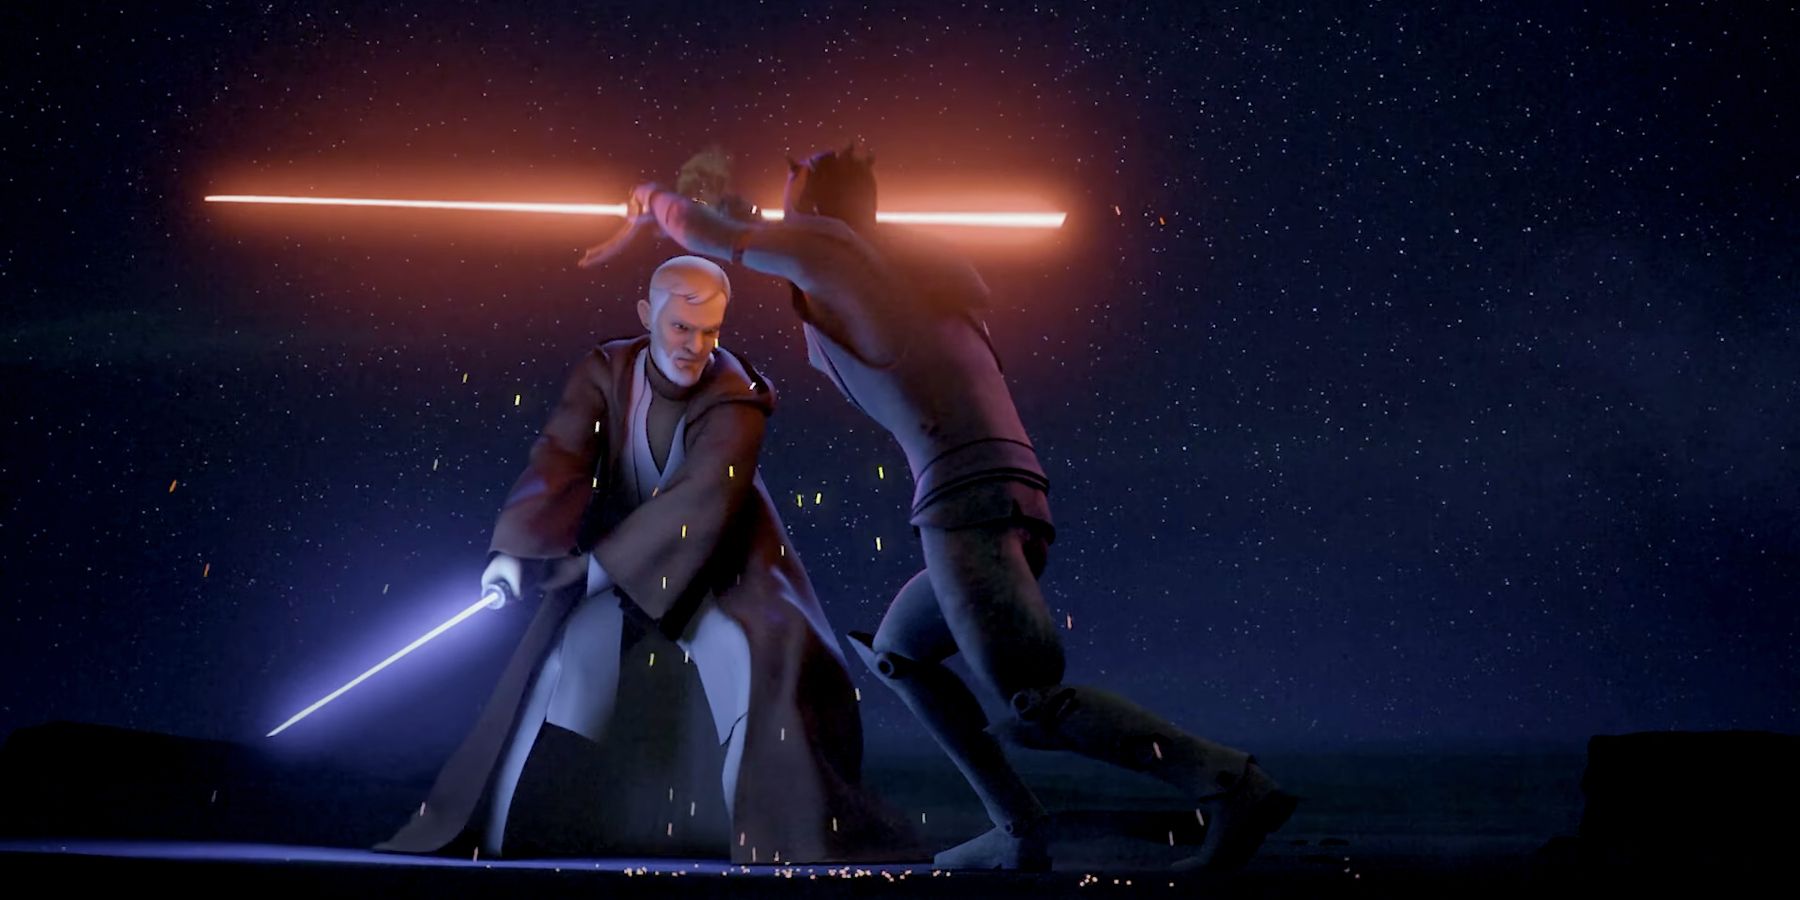 Obi-Wan Kenobi defeating Maul in Star Wars Rebels